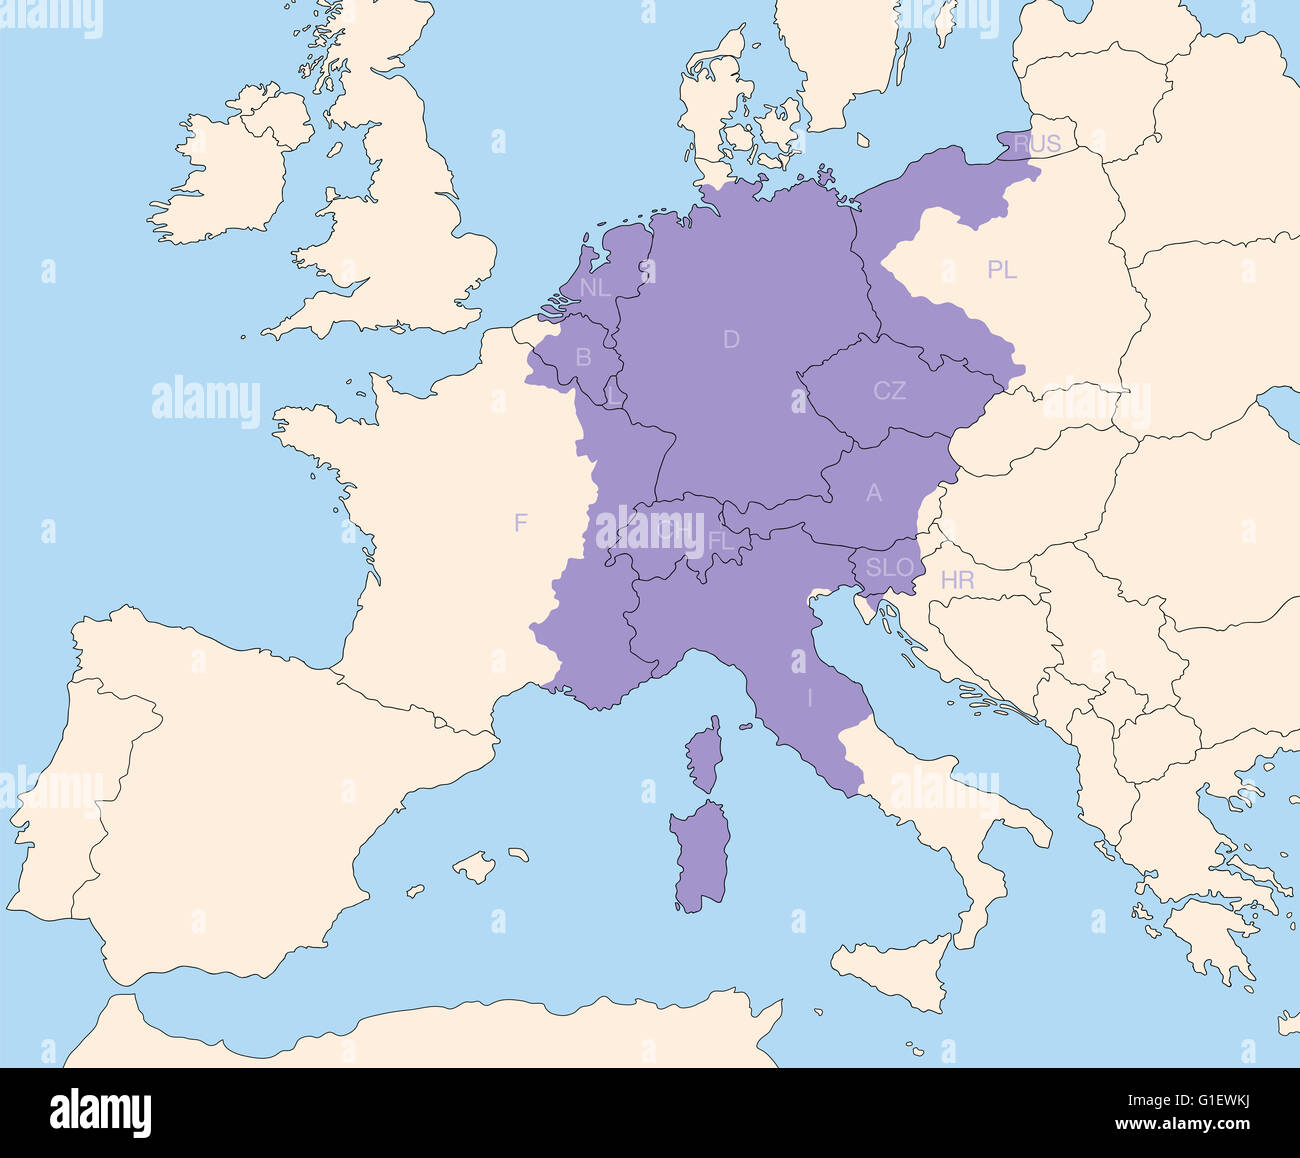 Heiliges Römisches Reich, Großmacht in Europa während der Mitte altert auf seine größte Ausdehnung um 1200 n. Chr.. Stockfoto